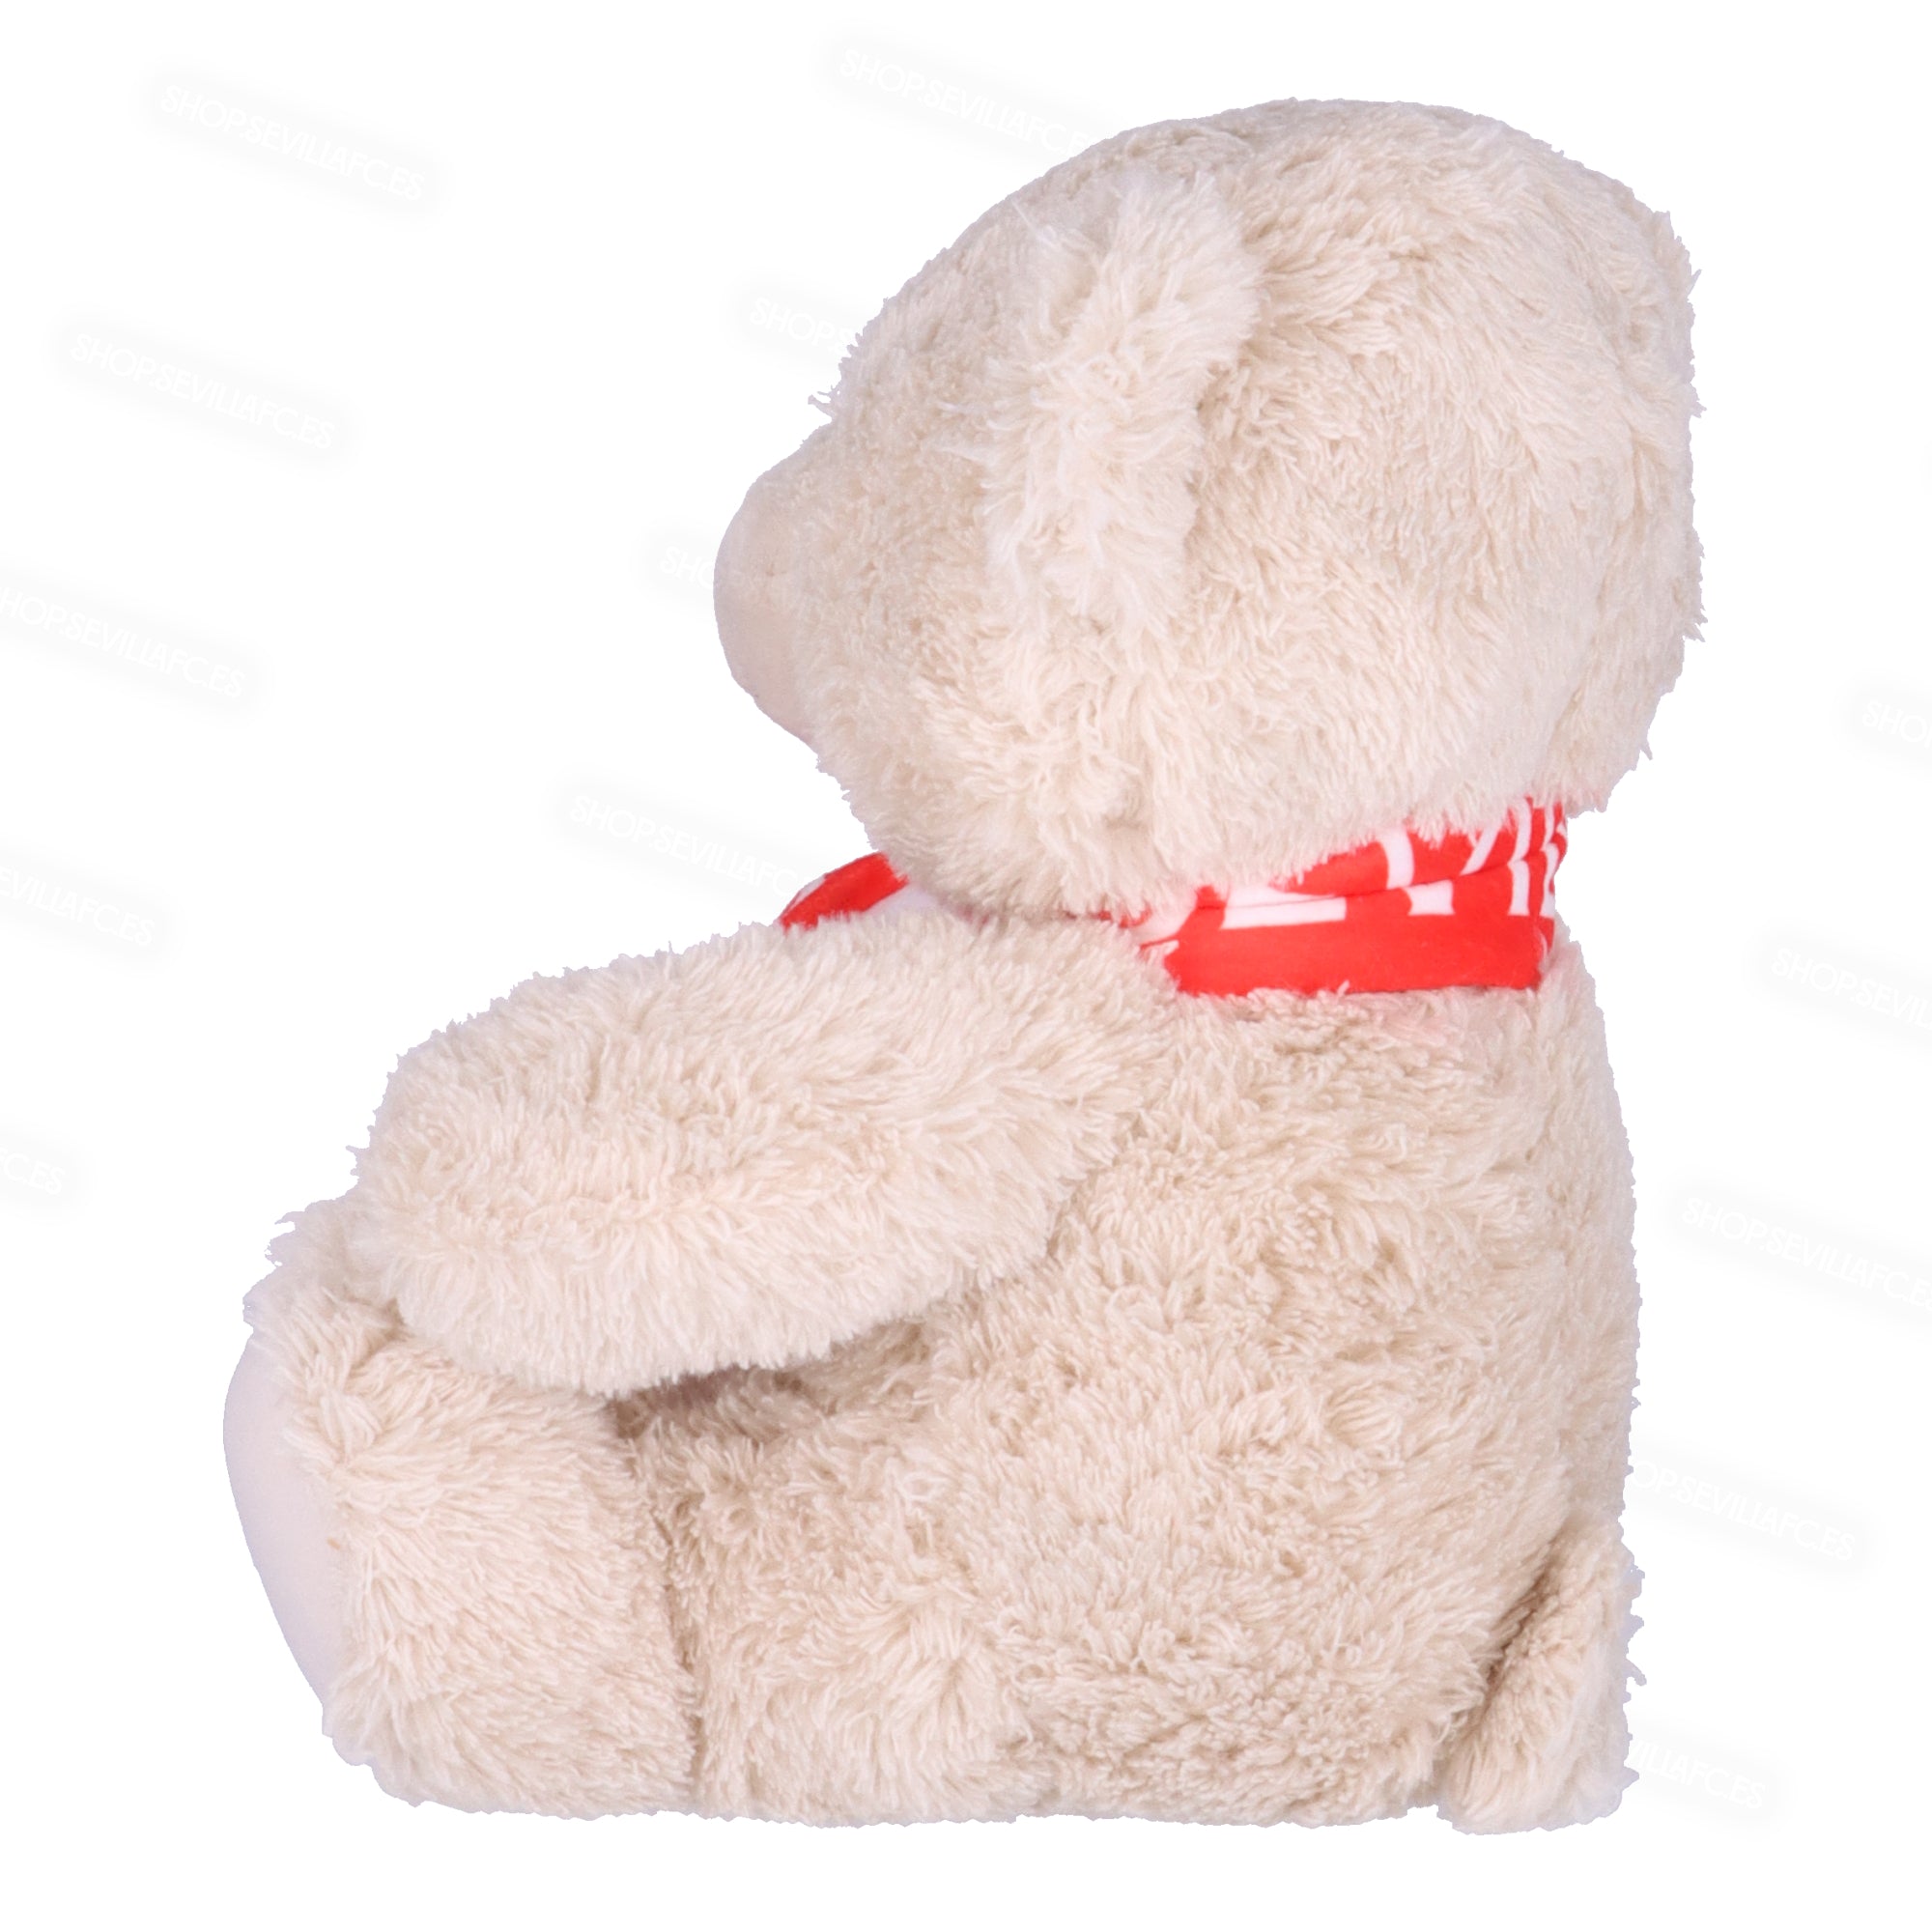 Teddy bear with scarf